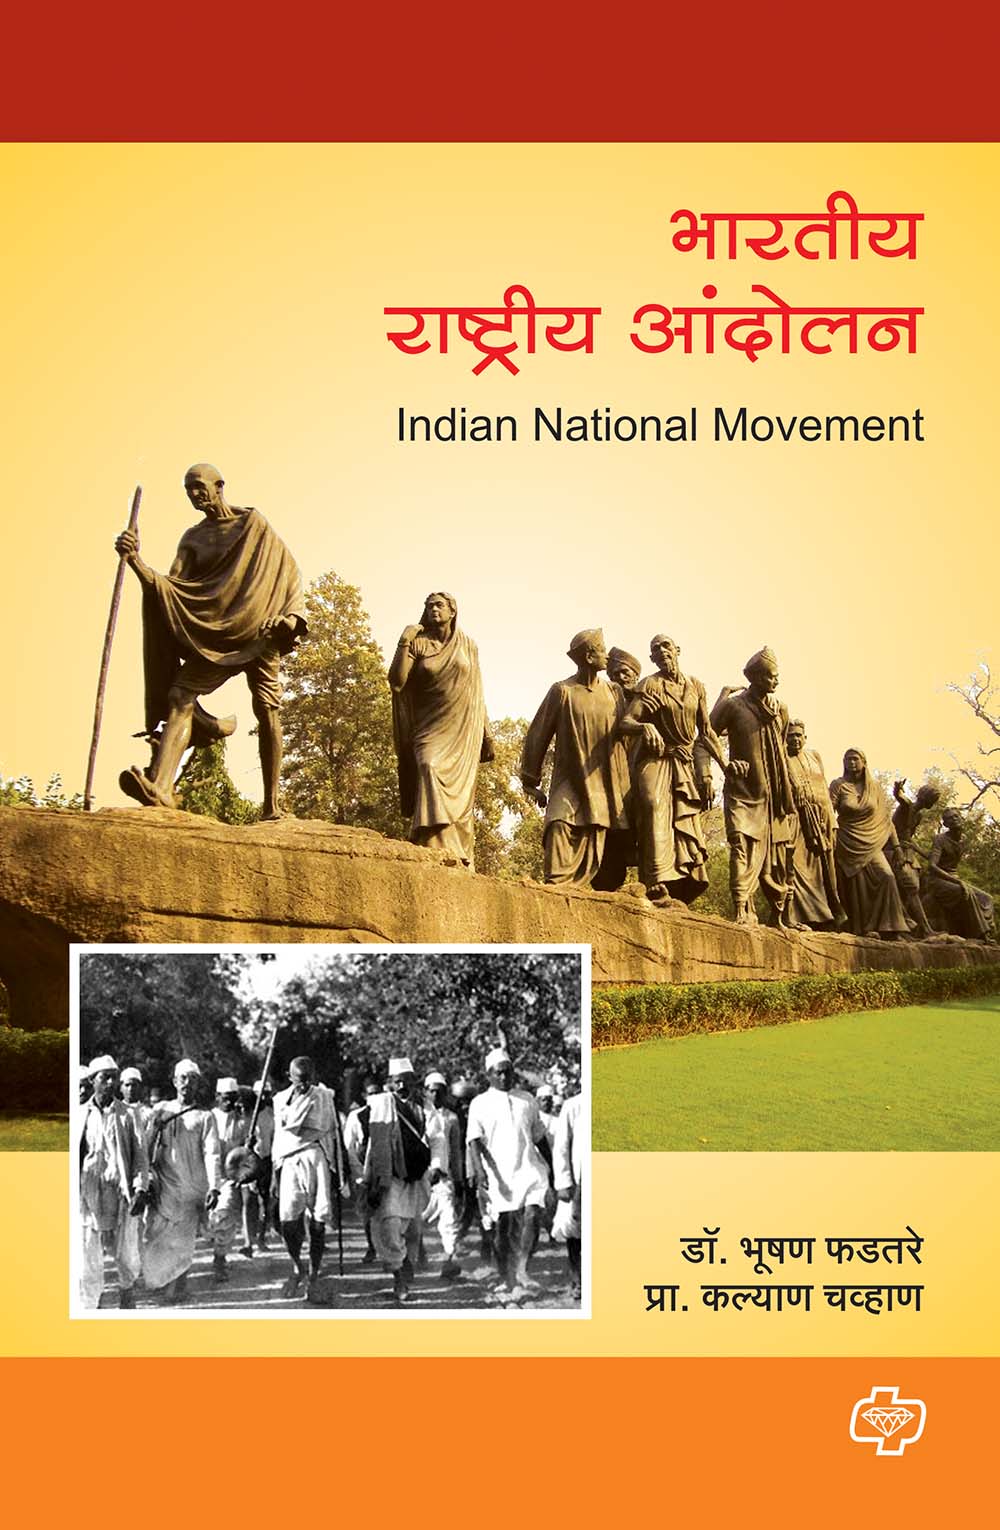 भारतीय राष्ट्रीय आंदोलन